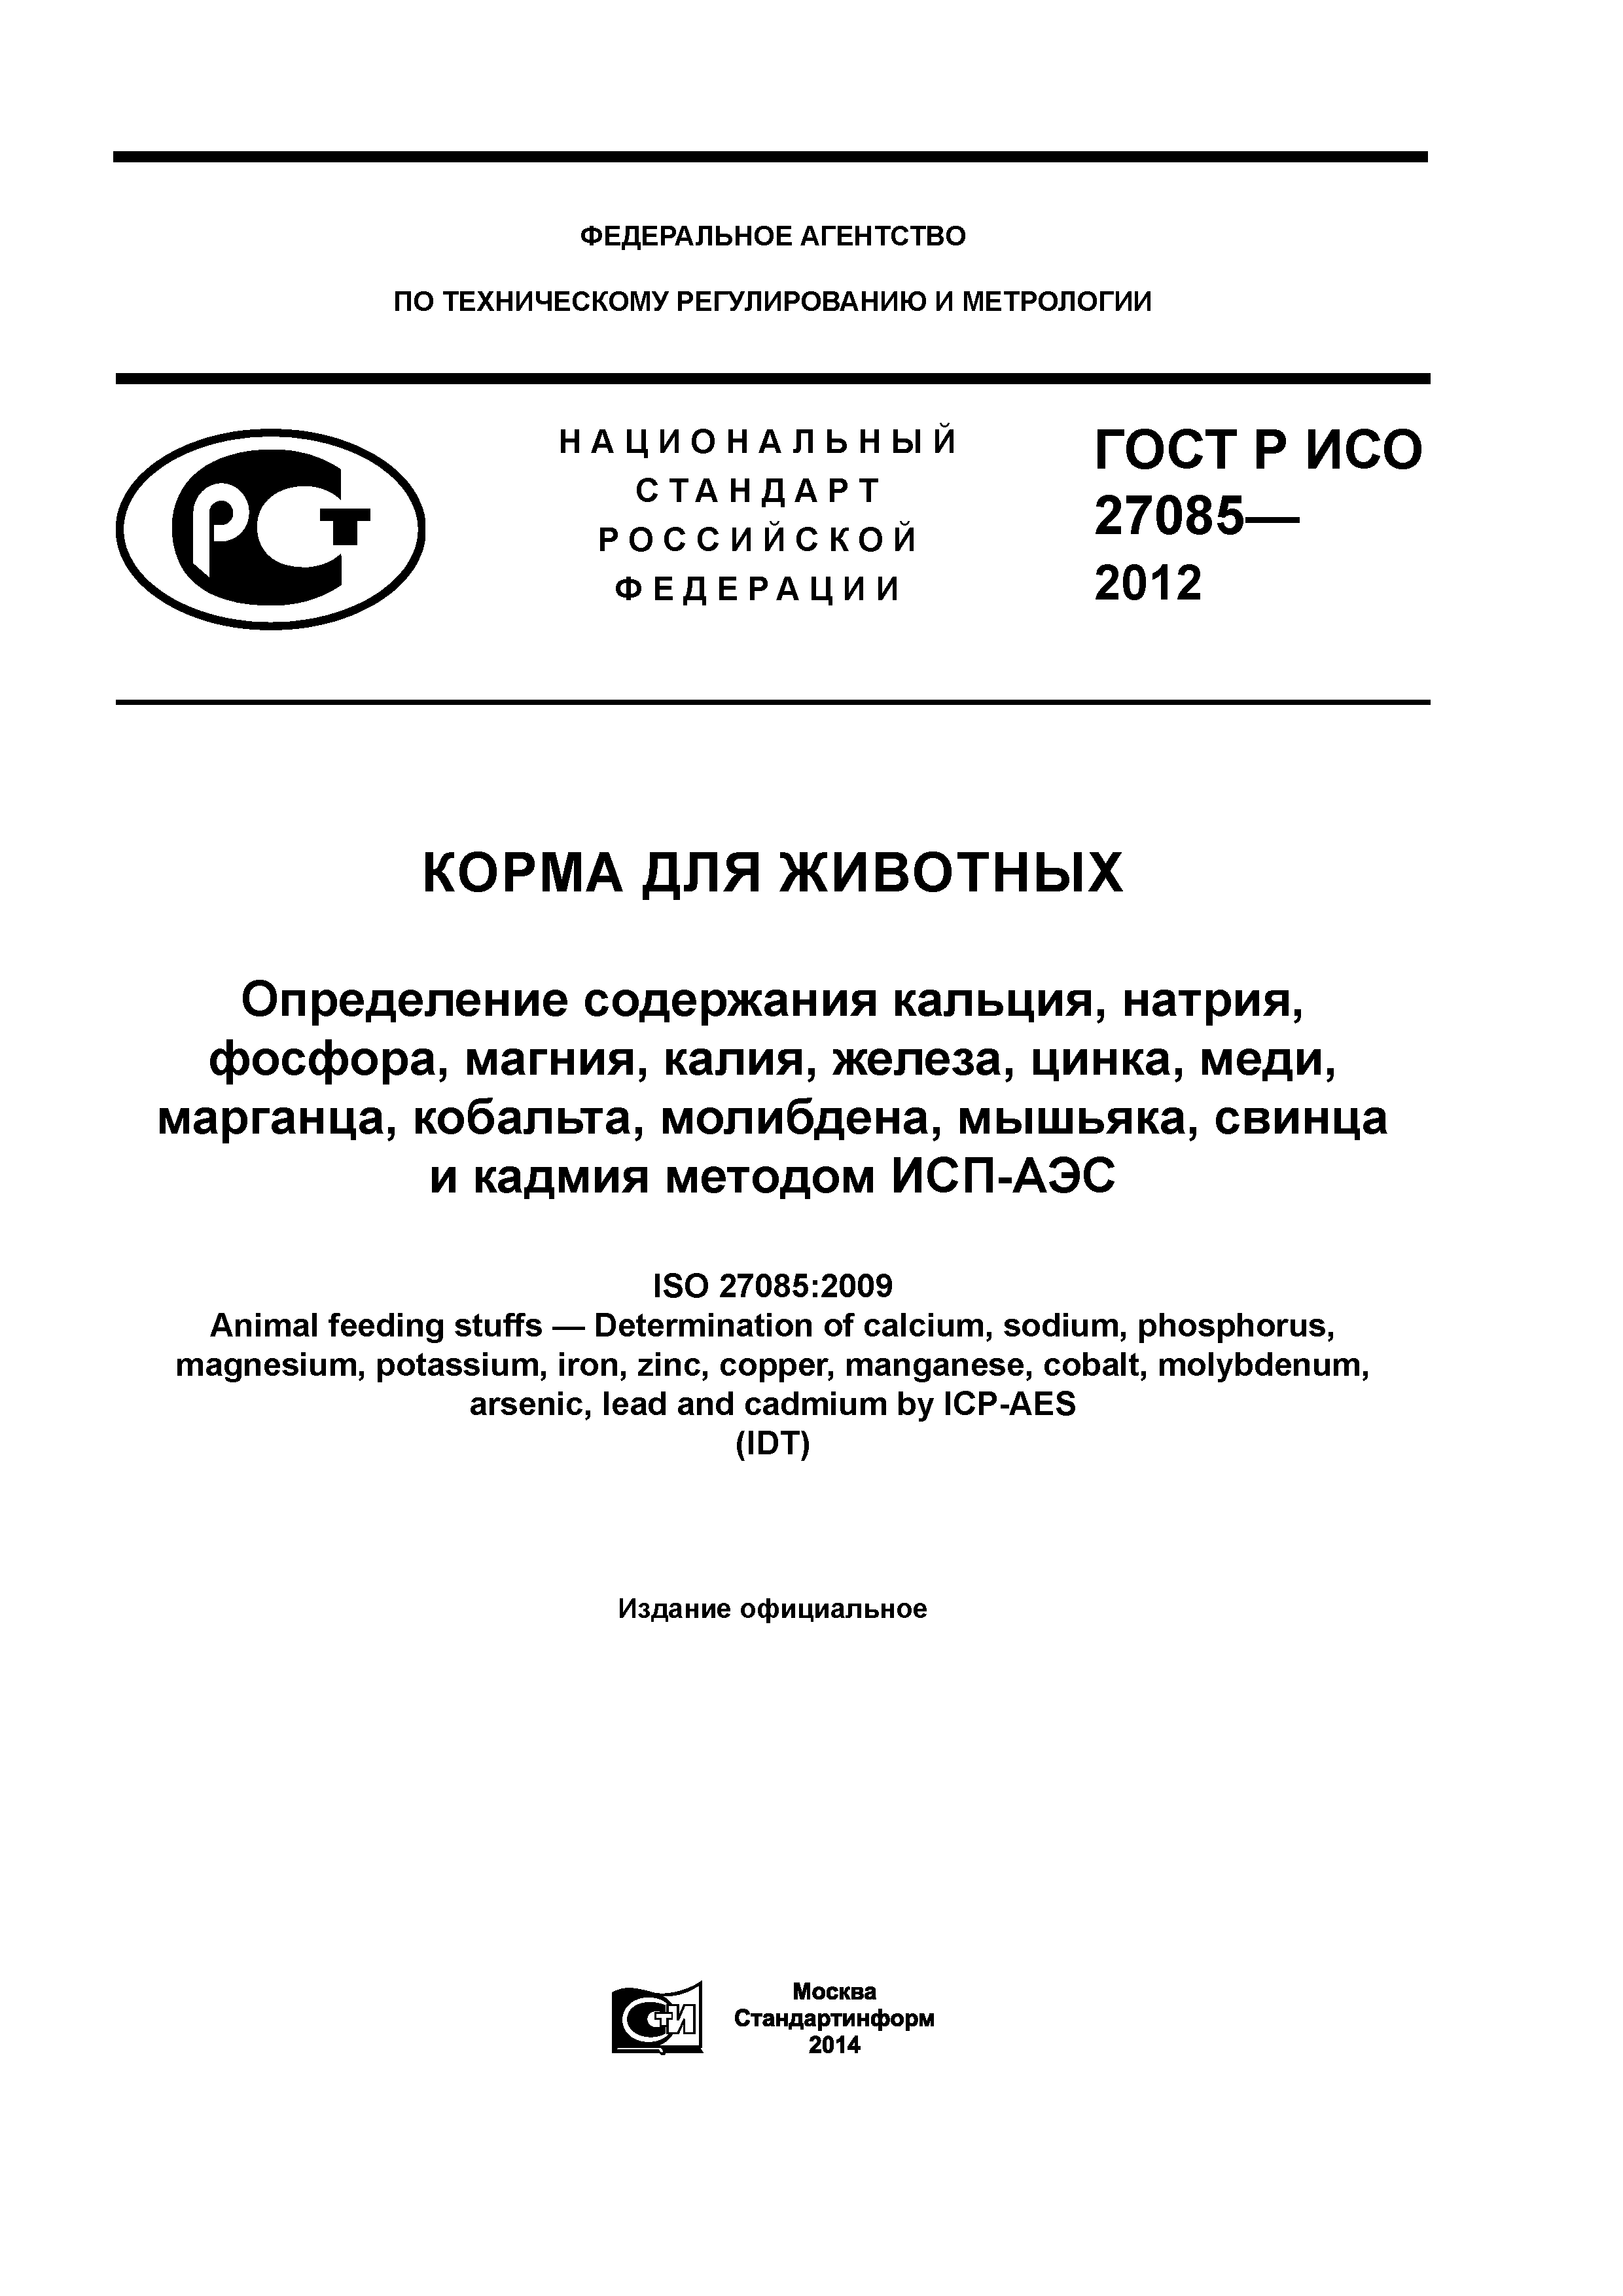 ГОСТ Р ИСО 27085-2012